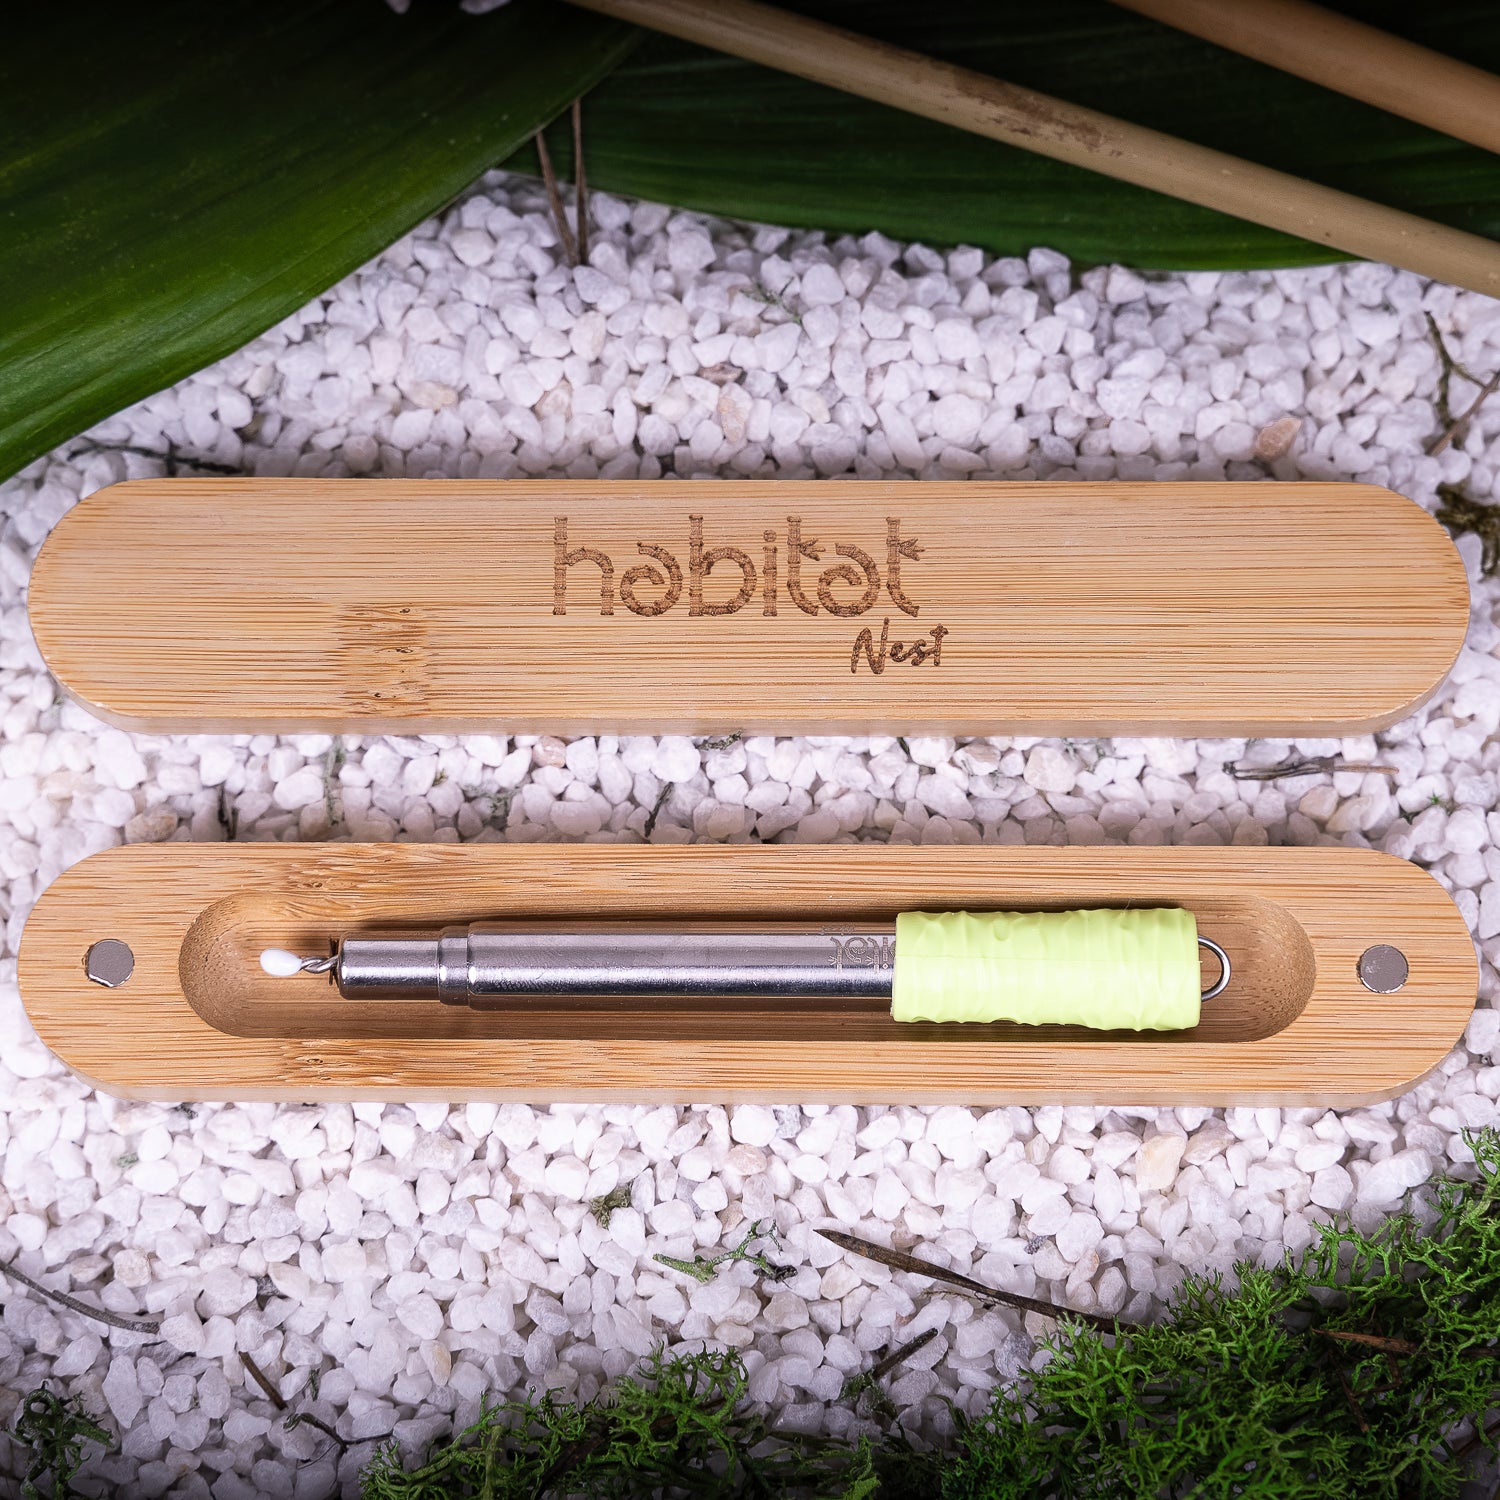 Habitat Nest Straw - Cannuccia Telescopica Riutilizzabile - Custodia in bambù magnetica - 100% Plastic Free